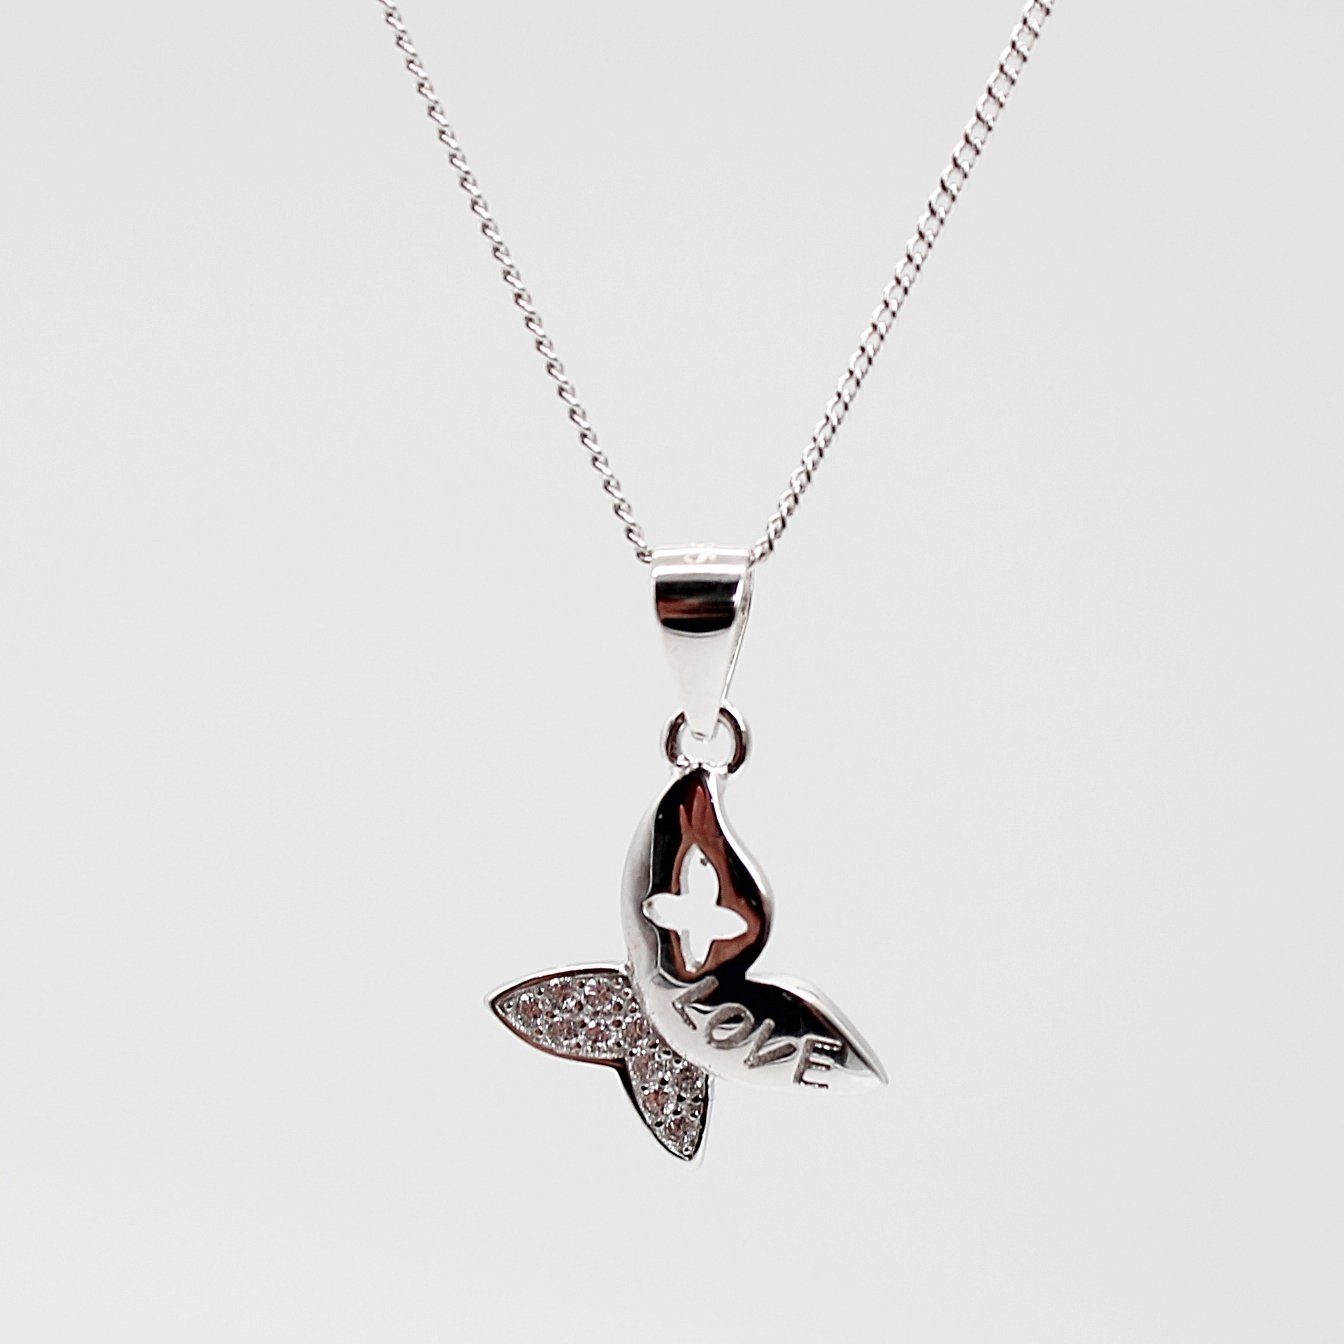 ELLAWIL Silberkette Damen Kette mit Schmetterling Anhänger Halskette Schmuck Ankerkette (Kettenlänge 40 cm, Sterling Silber 925), inklusive Geschenkschachtel